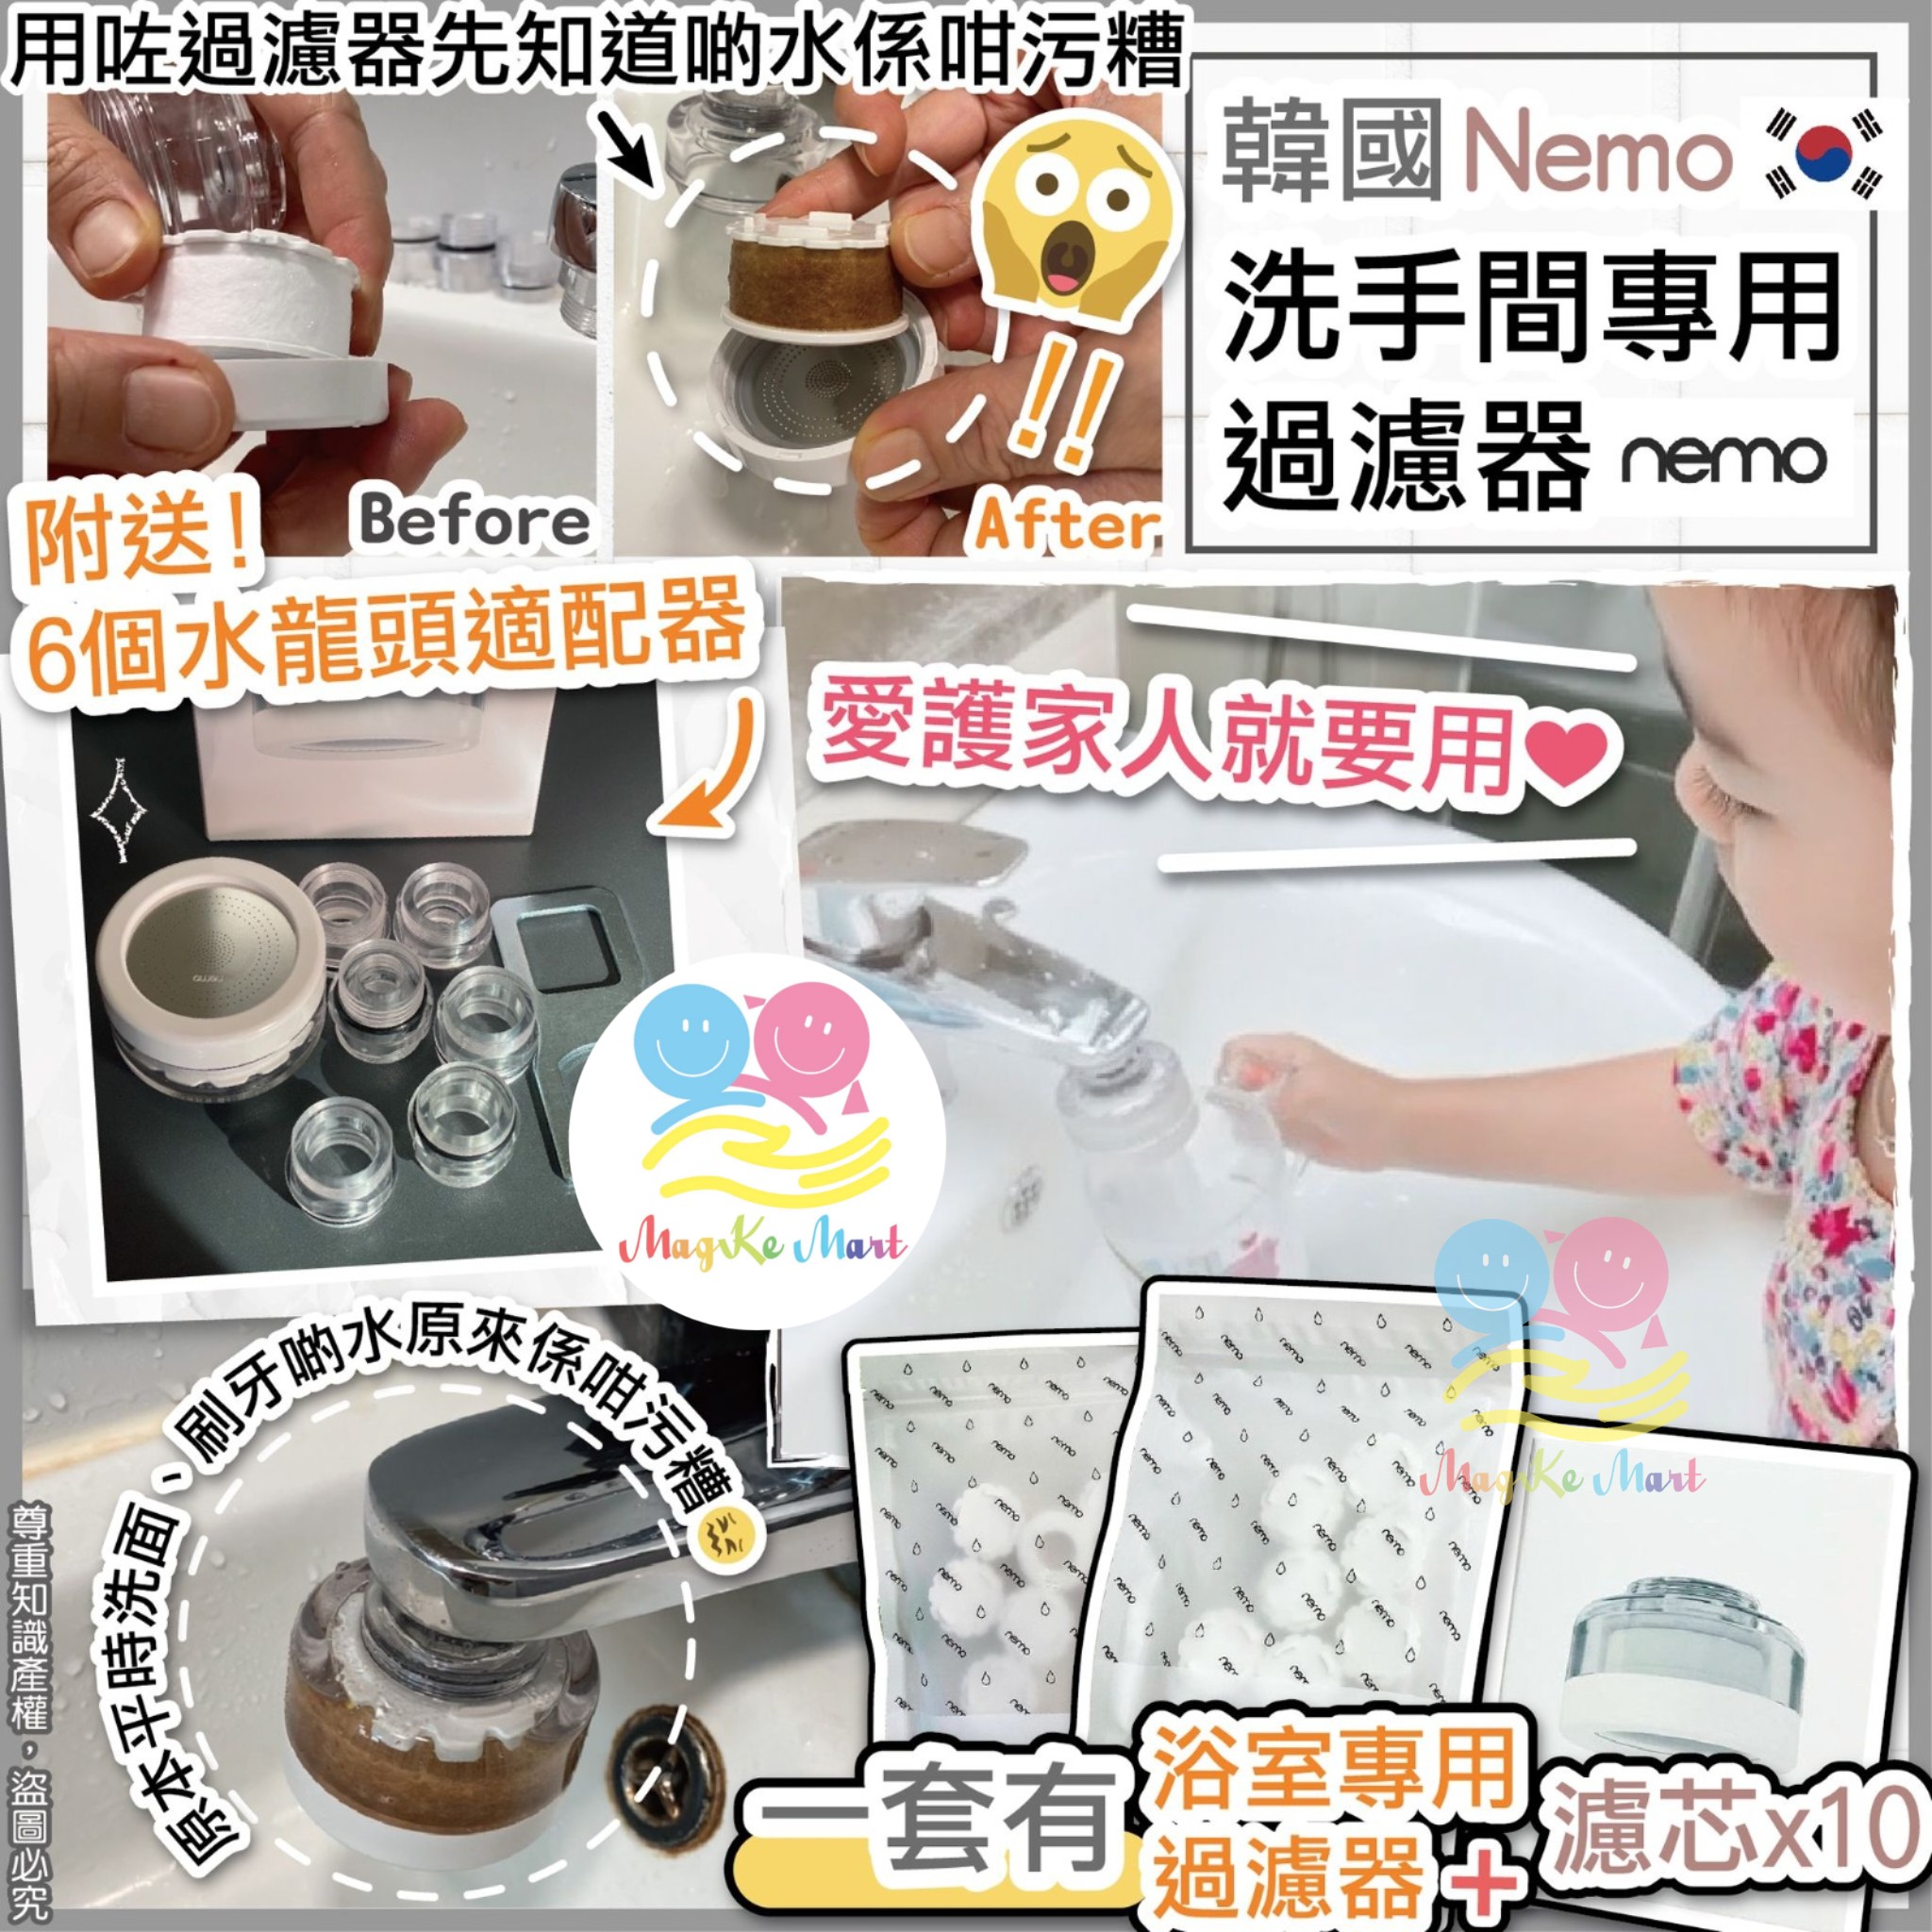 韓國 nemo 最新廚房/洗手間專用過濾器 (A) 廚房專用過濾器套裝